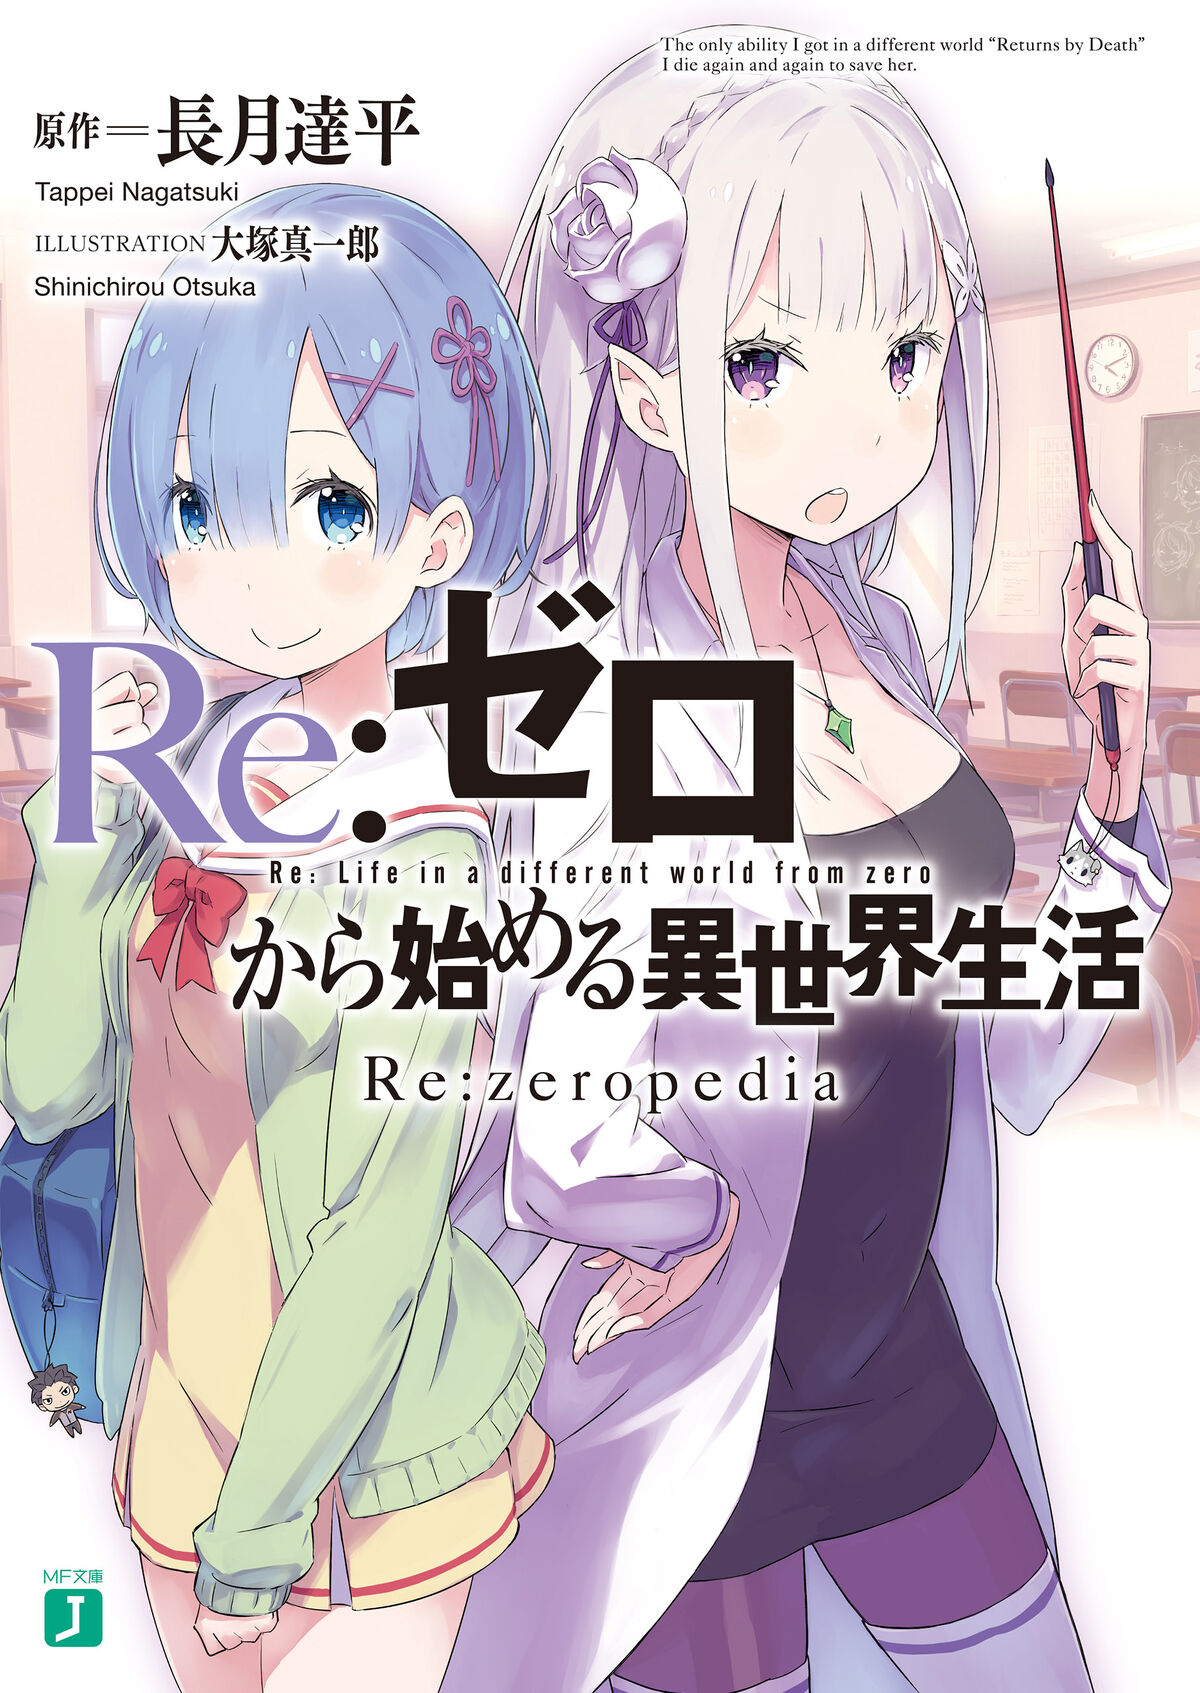 re-zero' tag wiki - Anime & Manga Stack Exchange